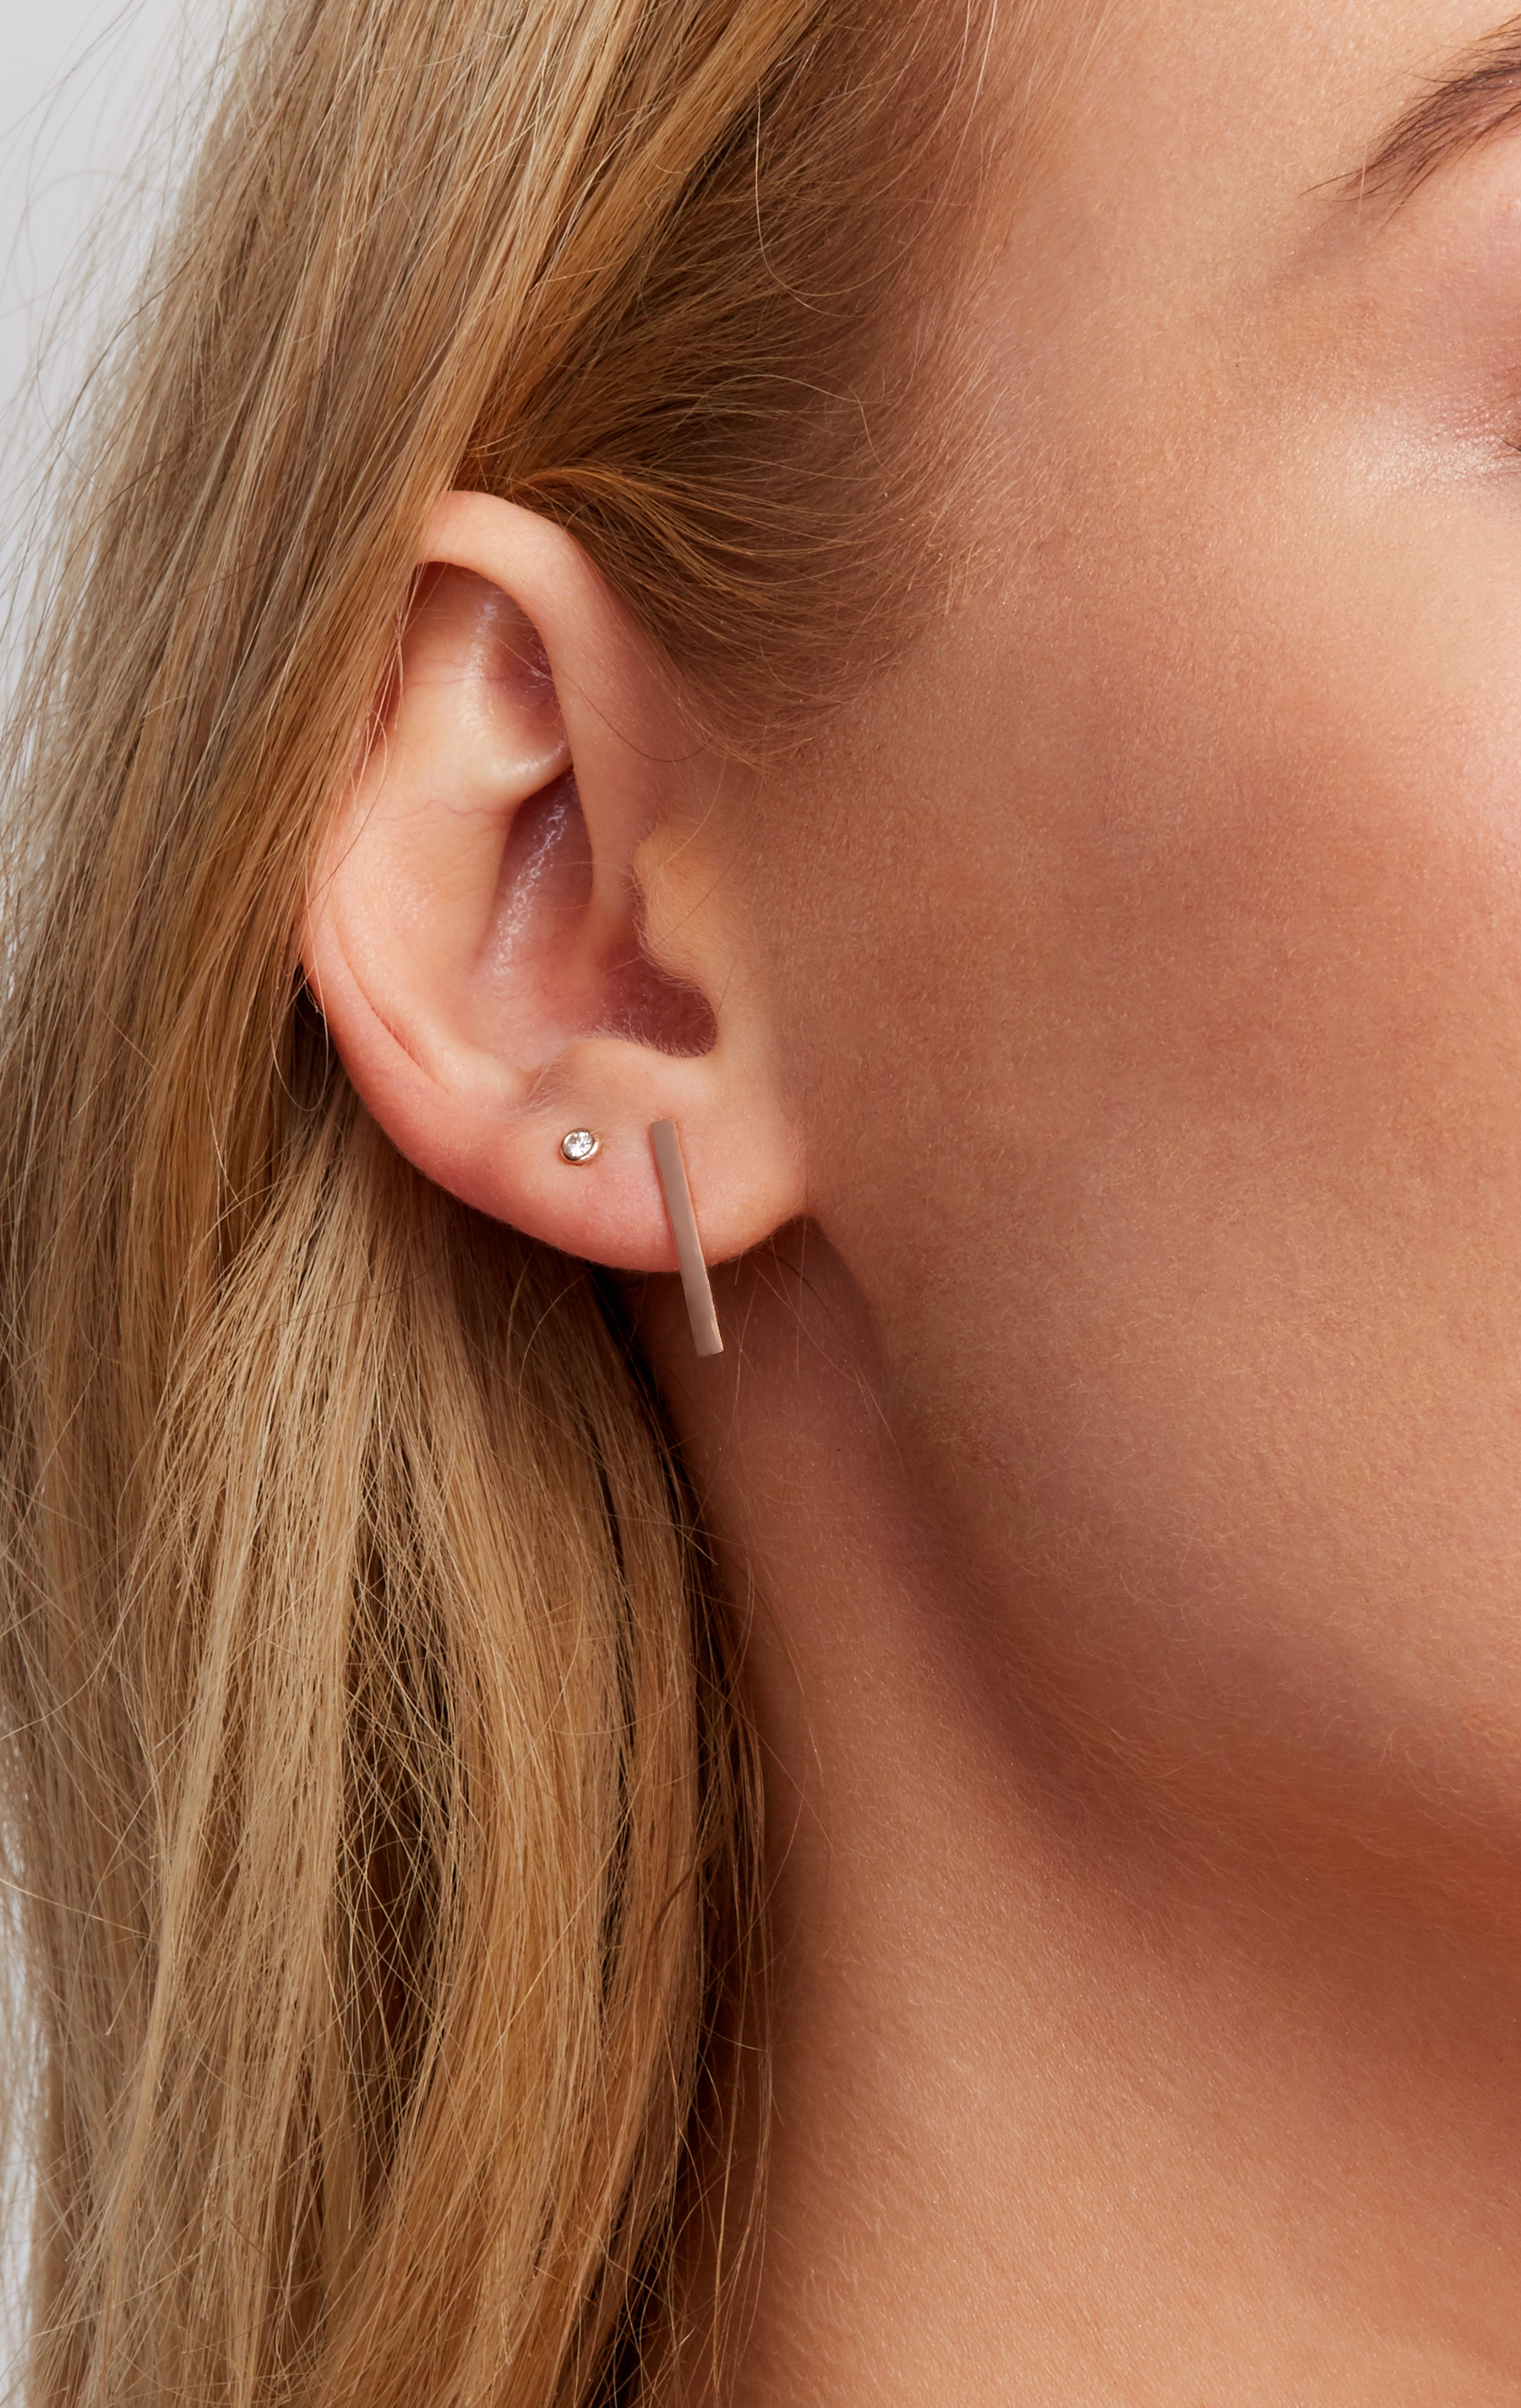 Stud Earrings: Dainty Gold & Diamond Studs